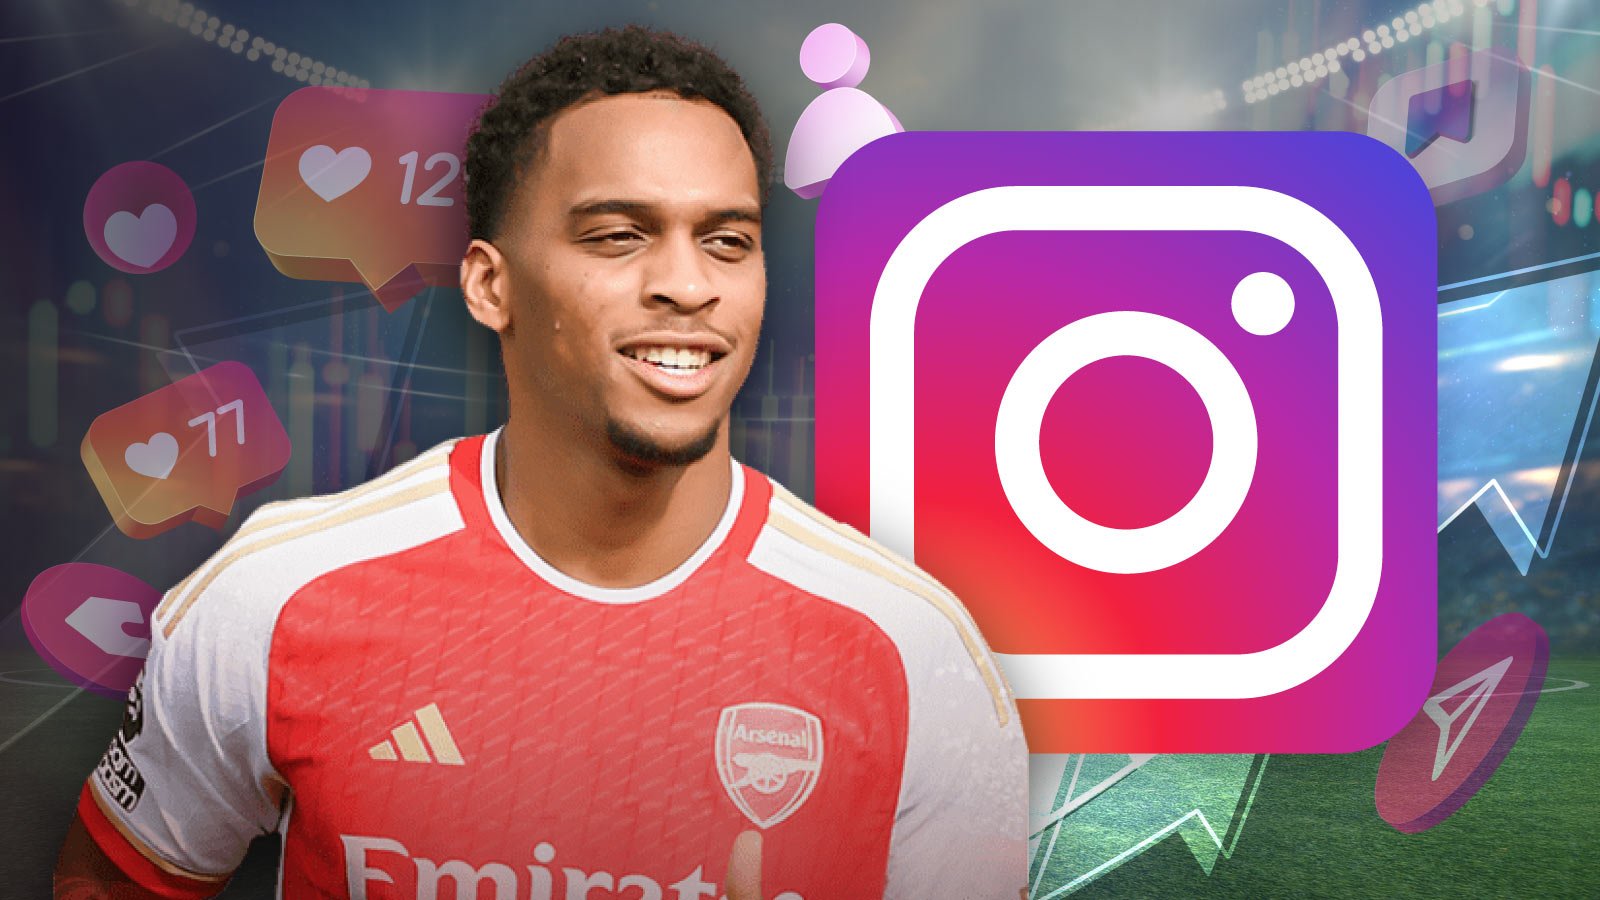 Arsenal's Jurrien Timber Sees Massive Instagram Spike After Match-Winning Goal